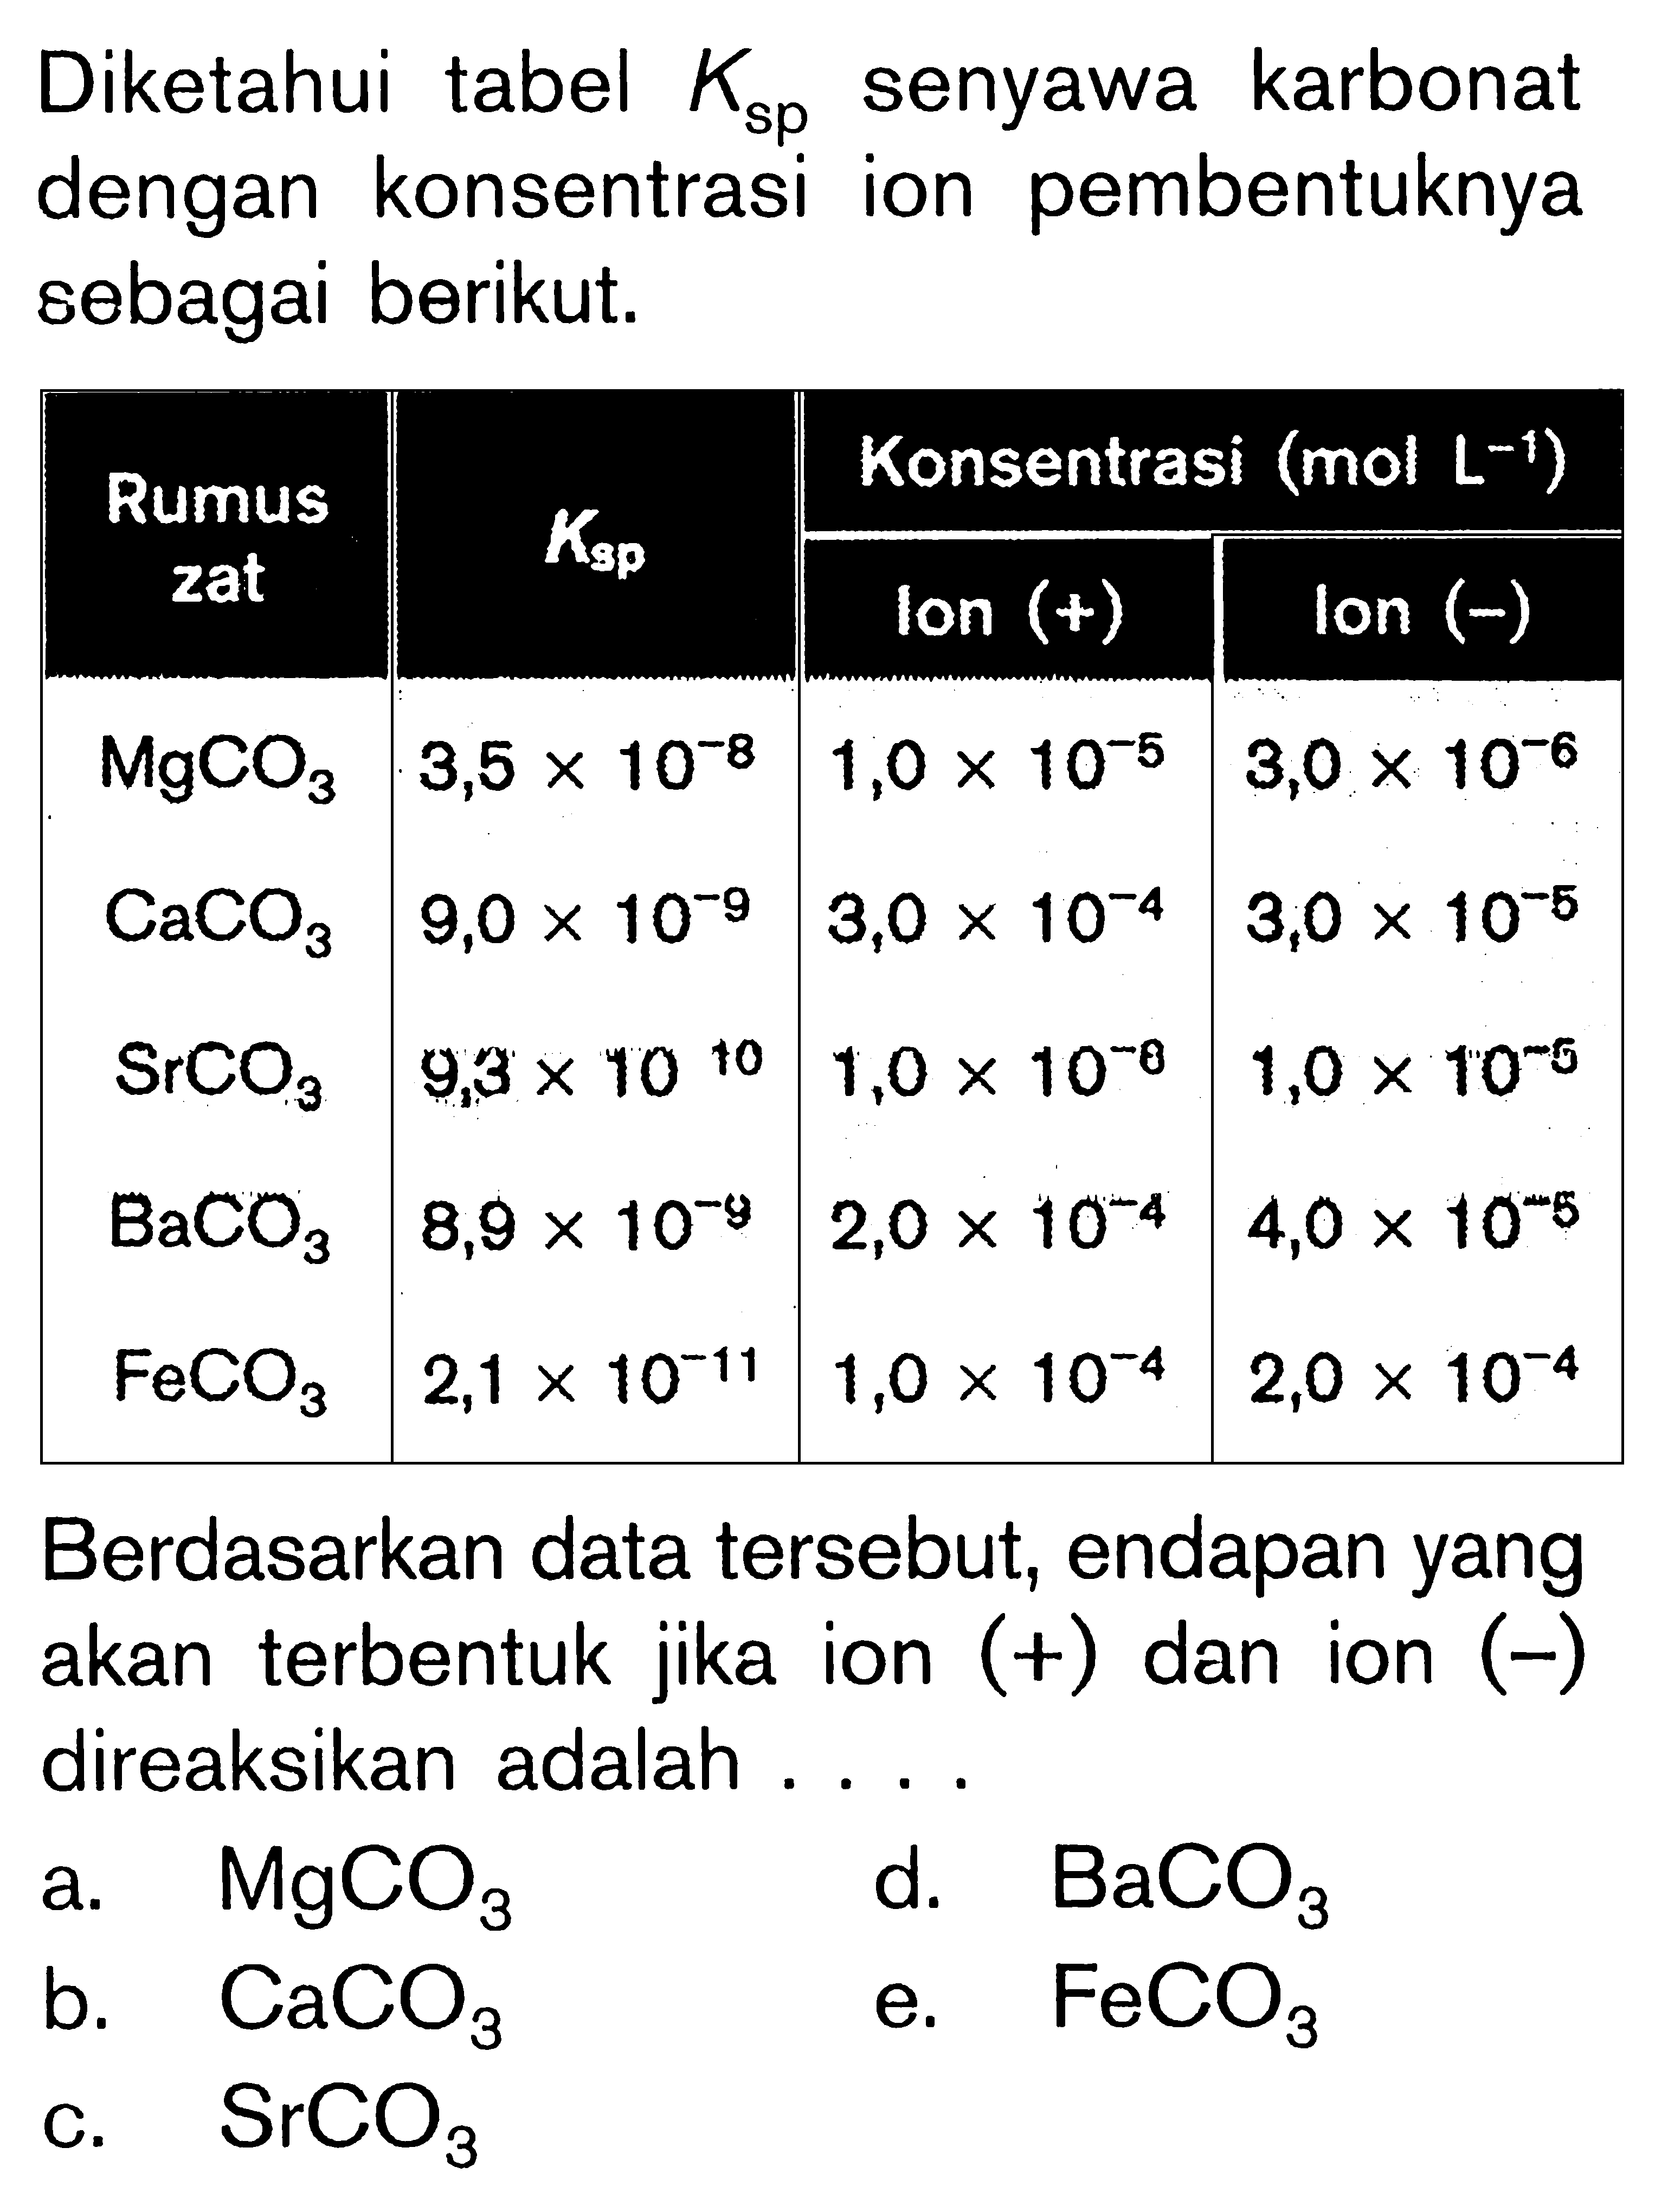 Diketahui tabel  Ksp  senyawa karbonat dengan konsentrasi ion pembentuknya sebagai berikut.Rumus zat Ksp Konsentrasi (mol L^(-1))     Ion (+)  Ion (-)  MgCO3 3,5 x 10^(-8) 1,0 x 10^(-5) 3,0 x 10^(-6)  CaCO3 9,0 x 10^(-9) 3,0 x 10^(-4) 3,0 x 10^(-5)  SrCO3 9,3 x 10^10 1,0 x 10^(-8) 1,0 x 10^(-5)  BaCO3 8,9 x 10^(-9) 2,0 x 10^(-4) 4,0 x 10^(-5)  FeCO3 2,1 x 10^(-11) 1,0 x 10^(-4) 2,0 x 10^(-4)  Berdasarkan data tersebut, endapan yang akan terbentuk jika ion (+) dan ion (-) direaksikan adalah....